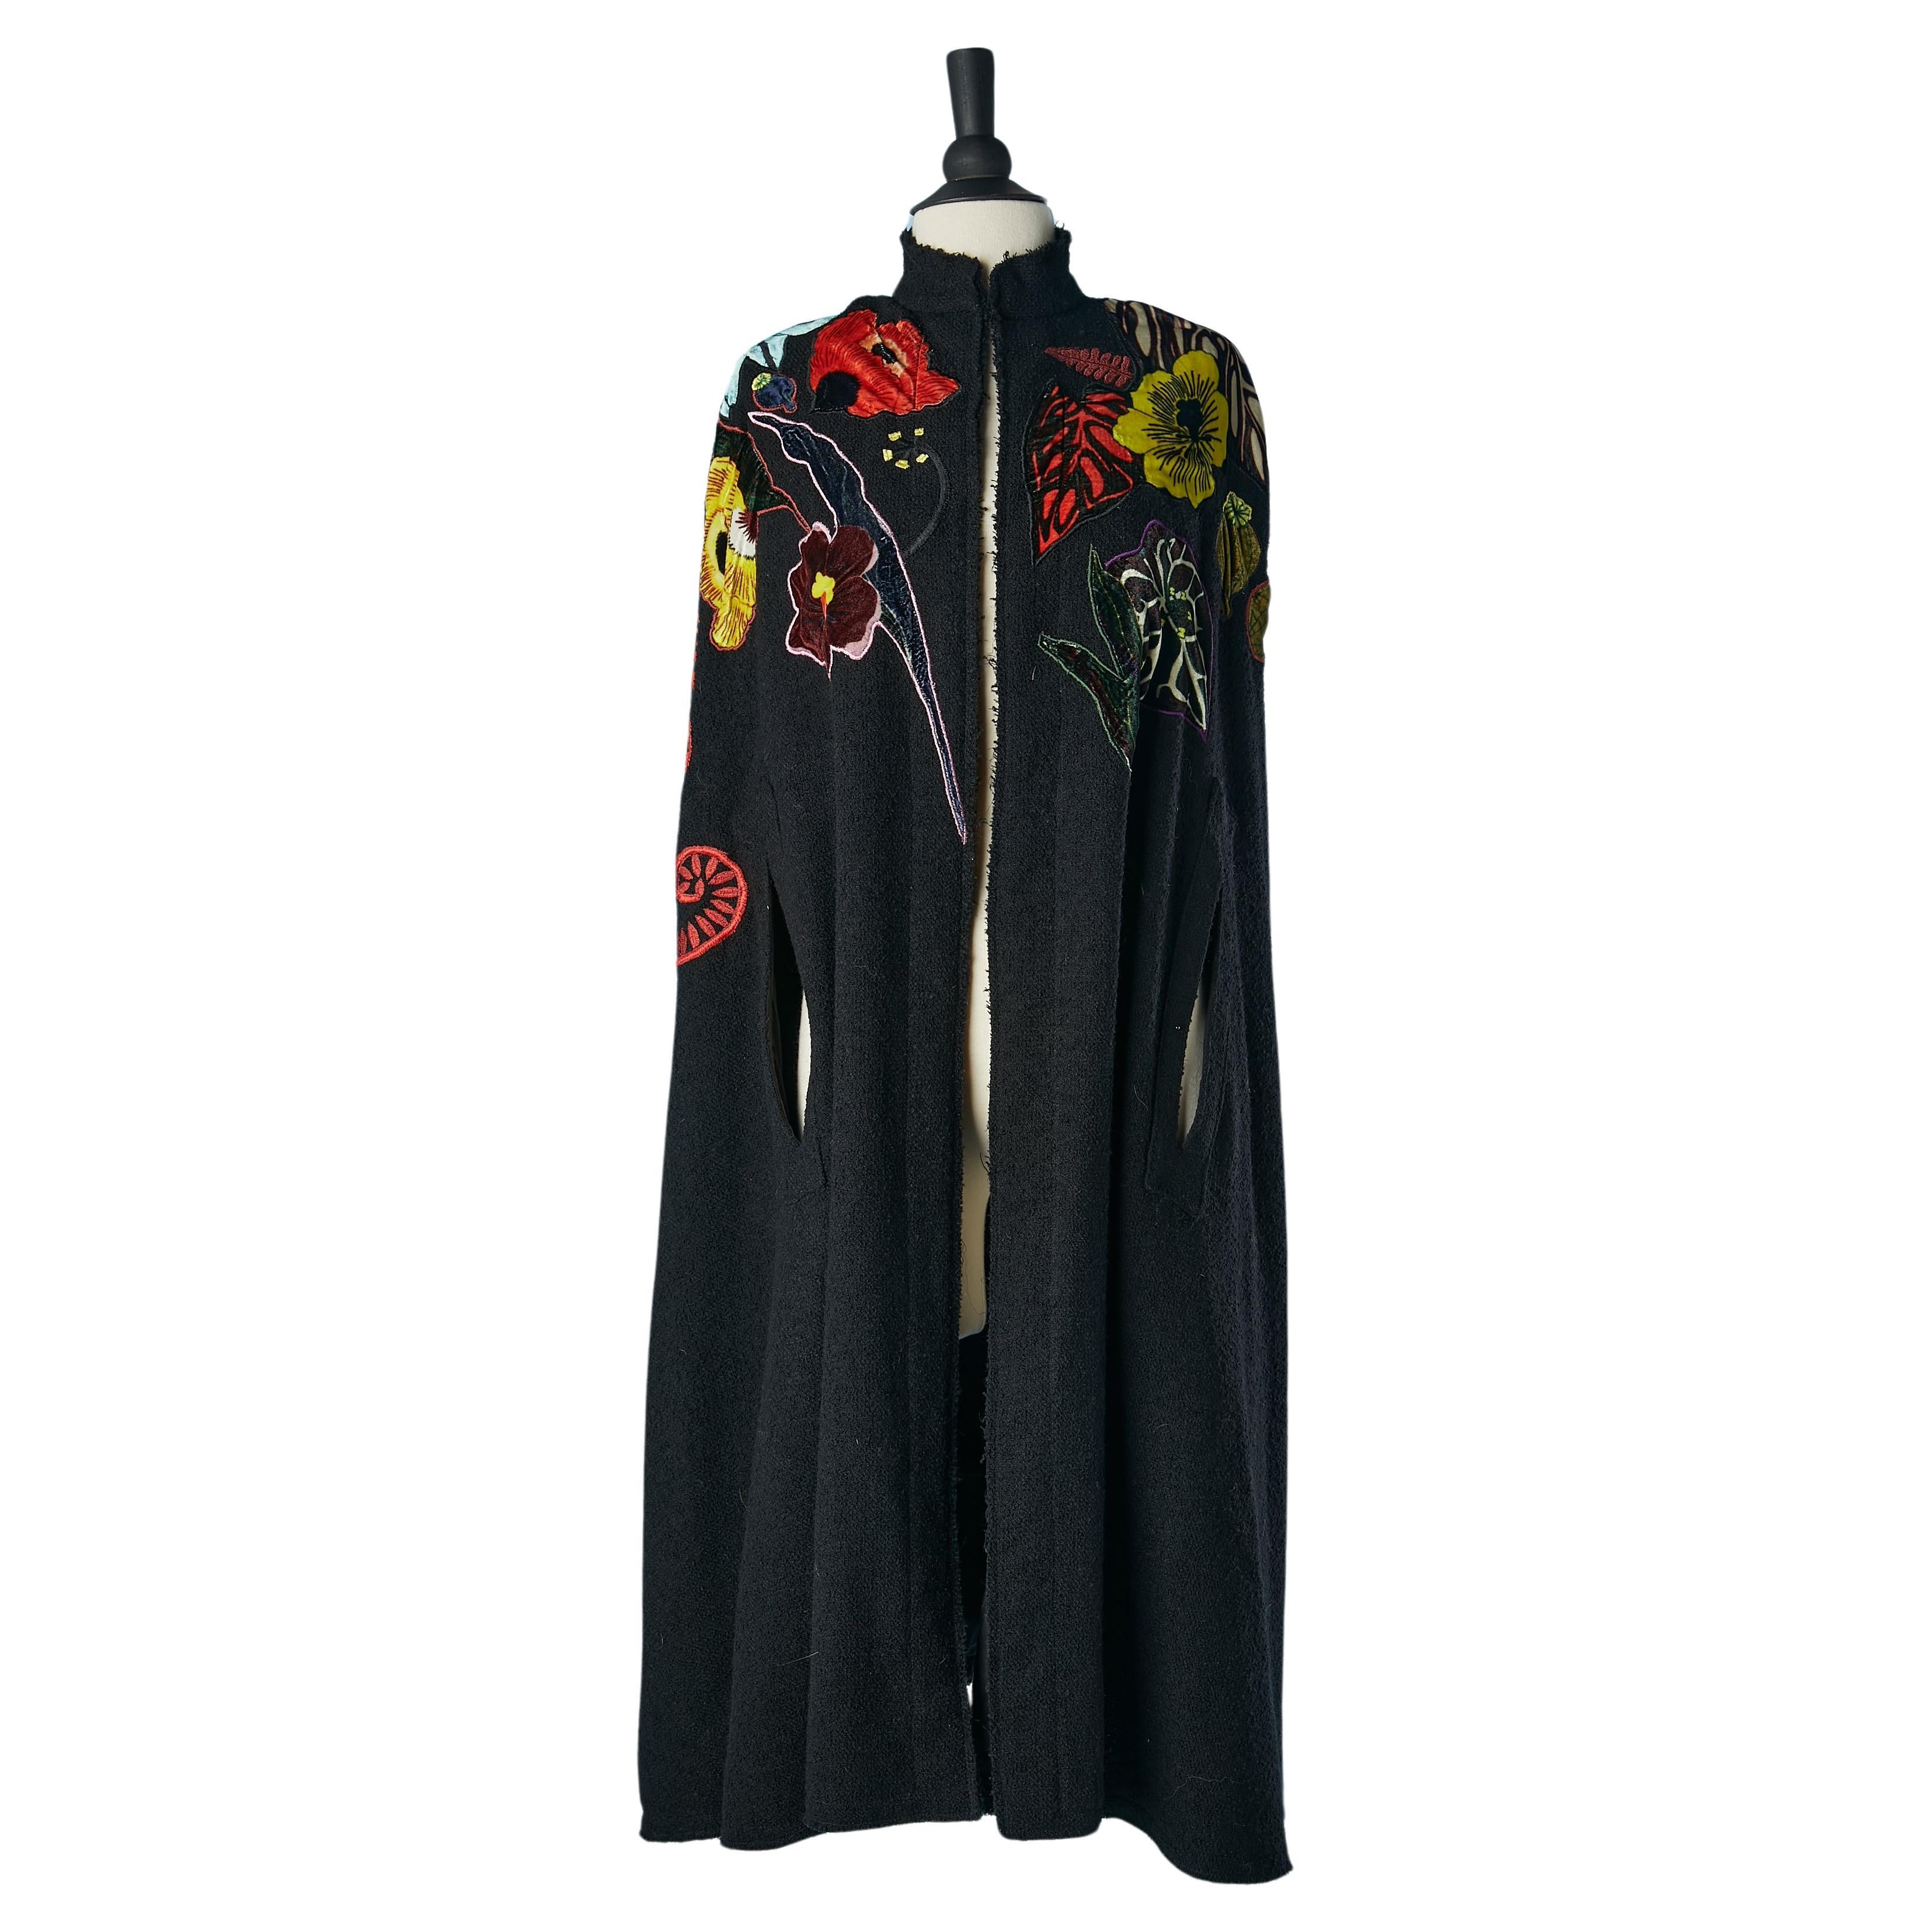 Black wool cape with velvet flowers appliqué Mimi Liberté design by Michel Klein For Sale